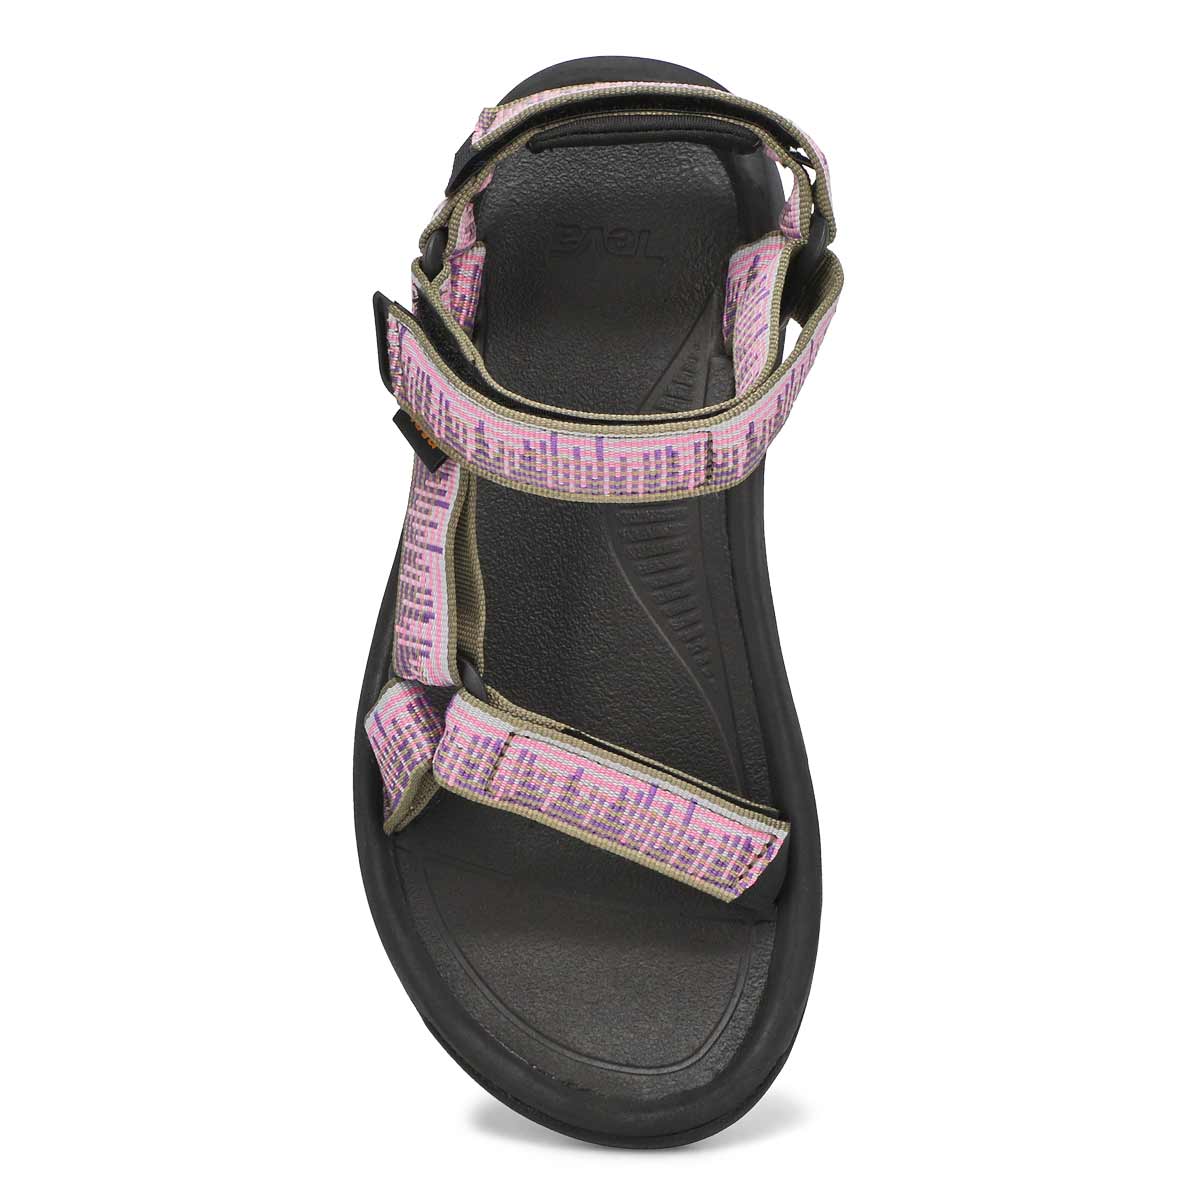 Sandale sport HURRICANE XL T2, femmes